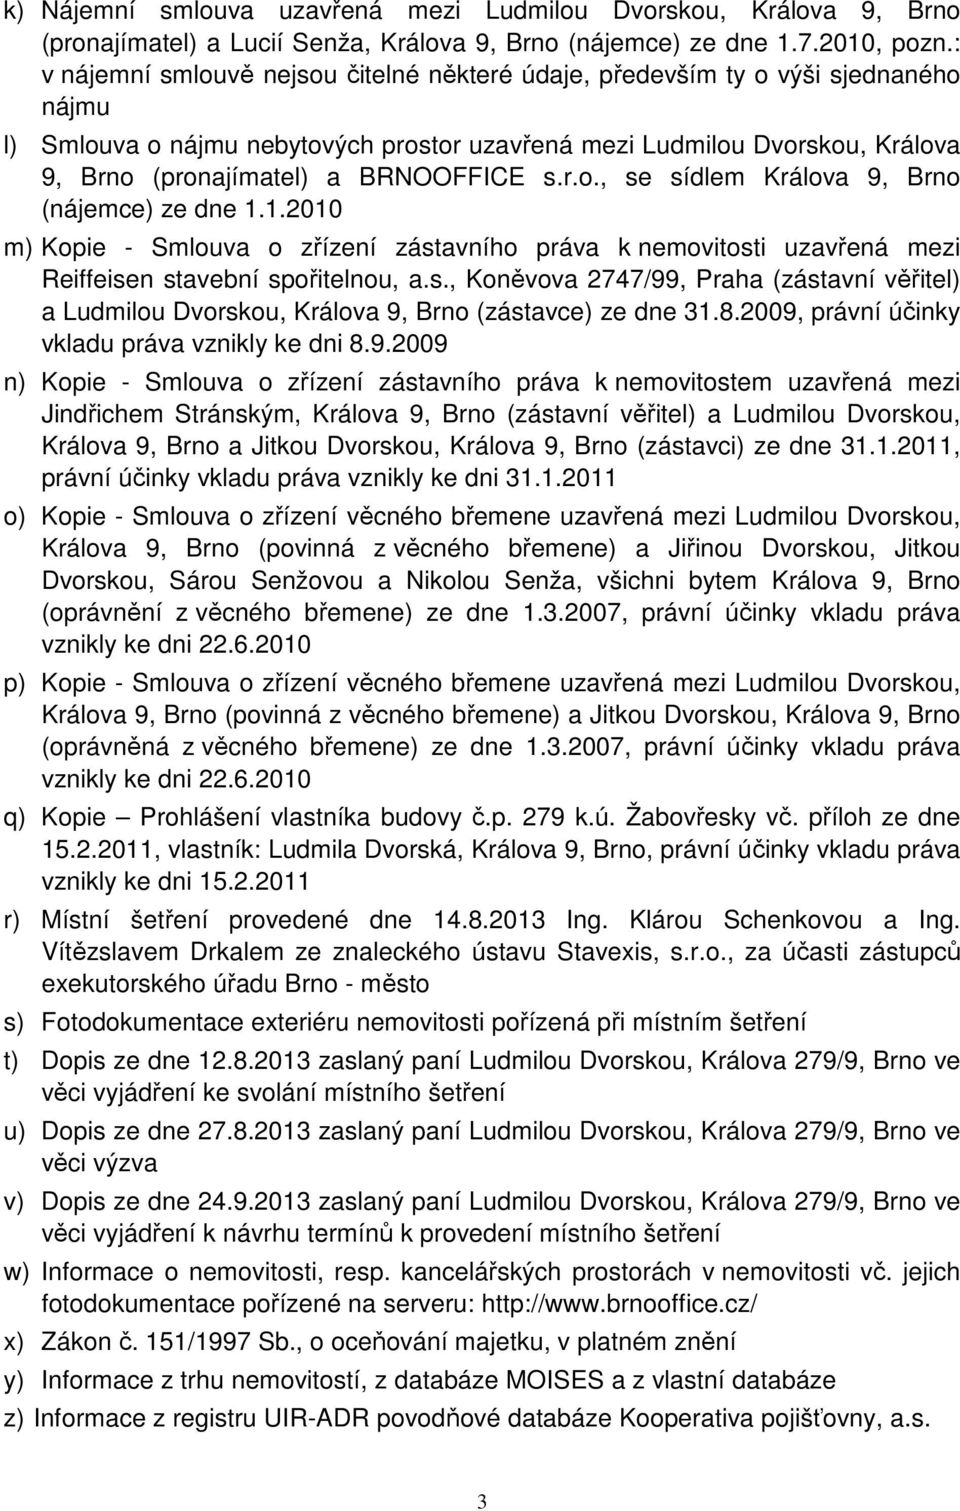 BRNOOFFICE s.r.o., se sídlem Králova 9, Brno (nájemce) ze dne 1.1.2010 m) Kopie - Smlouva o zřízení zástavního práva k nemovitosti uzavřená mezi Reiffeisen stavební spořitelnou, a.s., Koněvova 2747/99, Praha (zástavní věřitel) a Ludmilou Dvorskou, Králova 9, Brno (zástavce) ze dne 31.